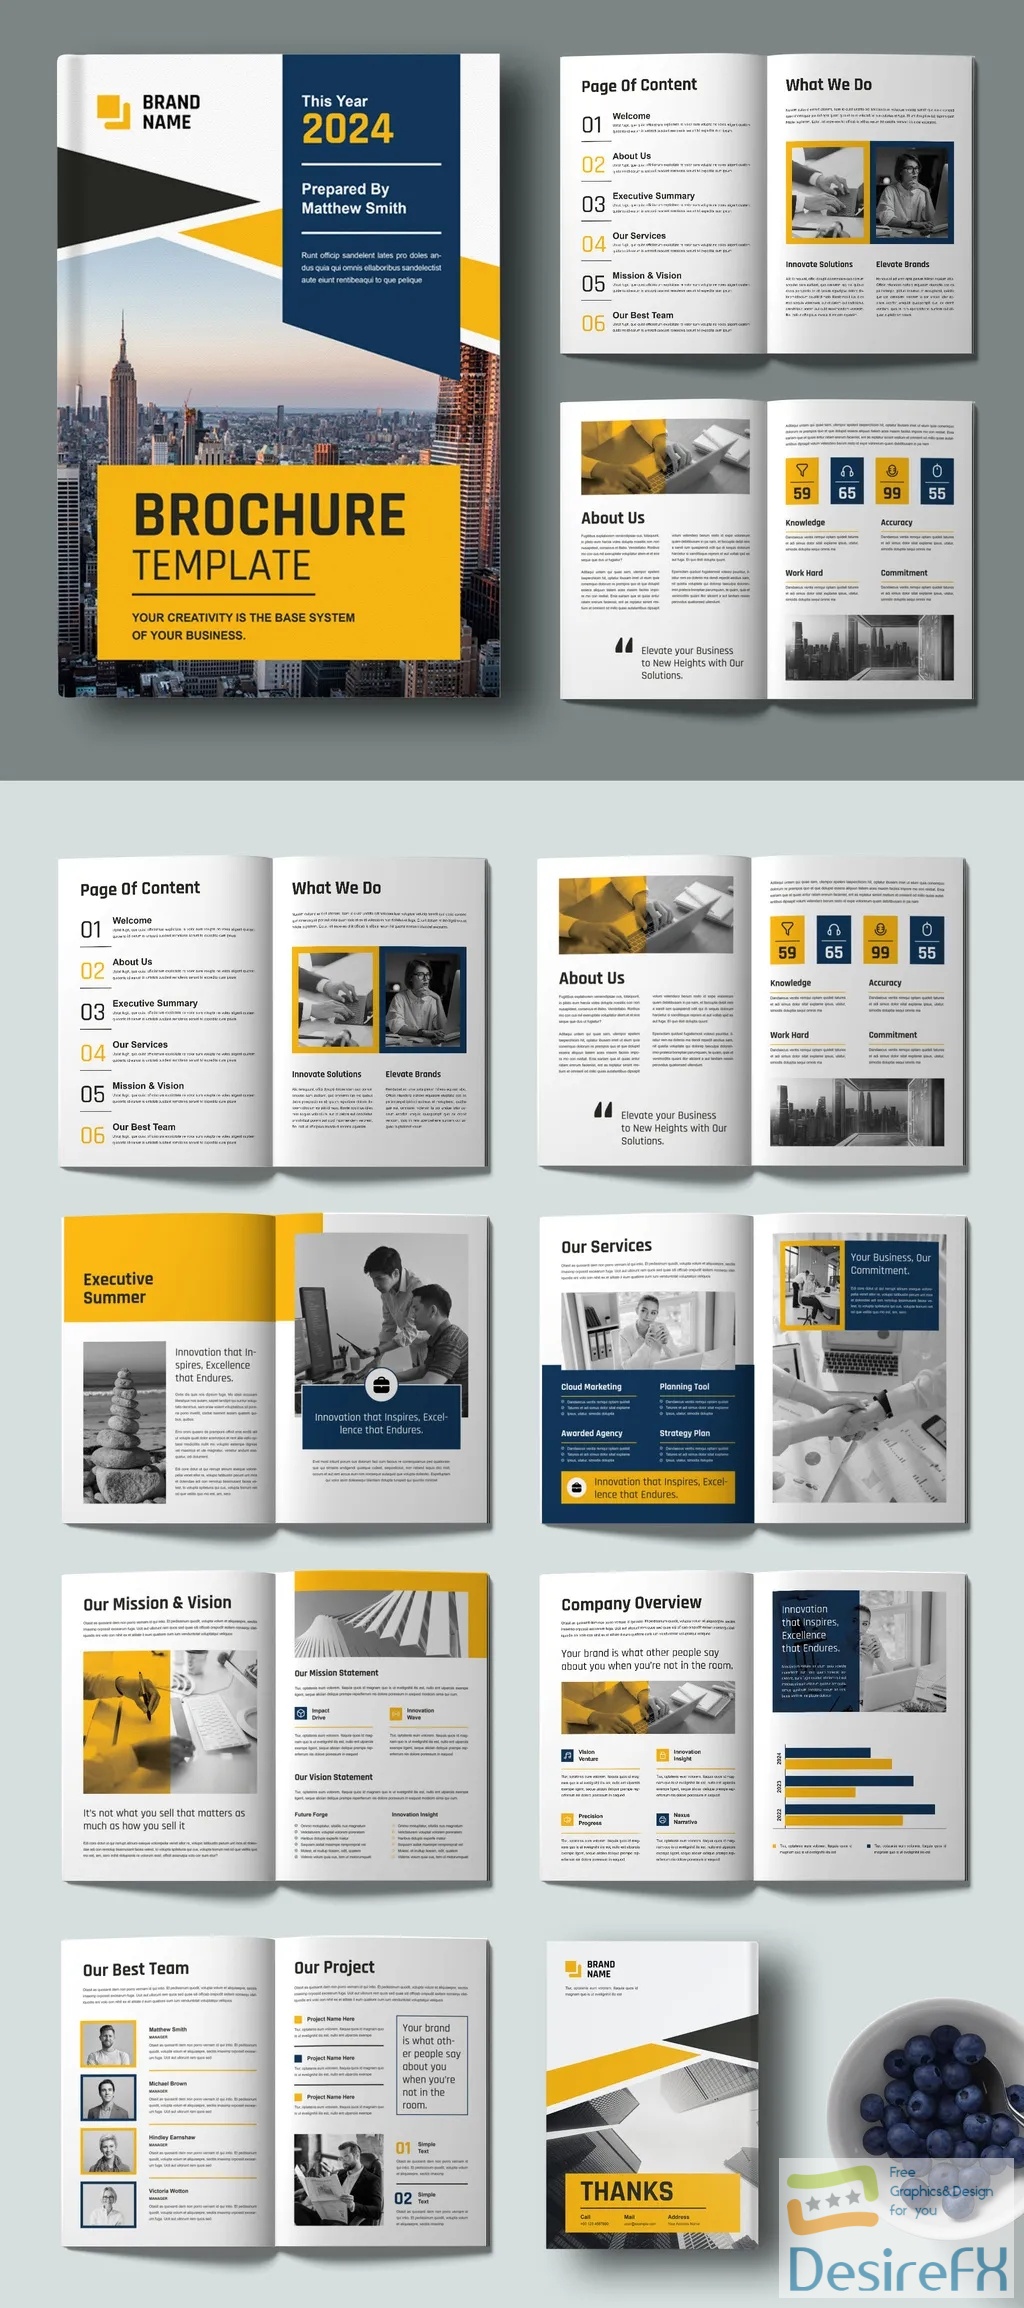 Adobestock - Corporate Business Brochure Template 718529720